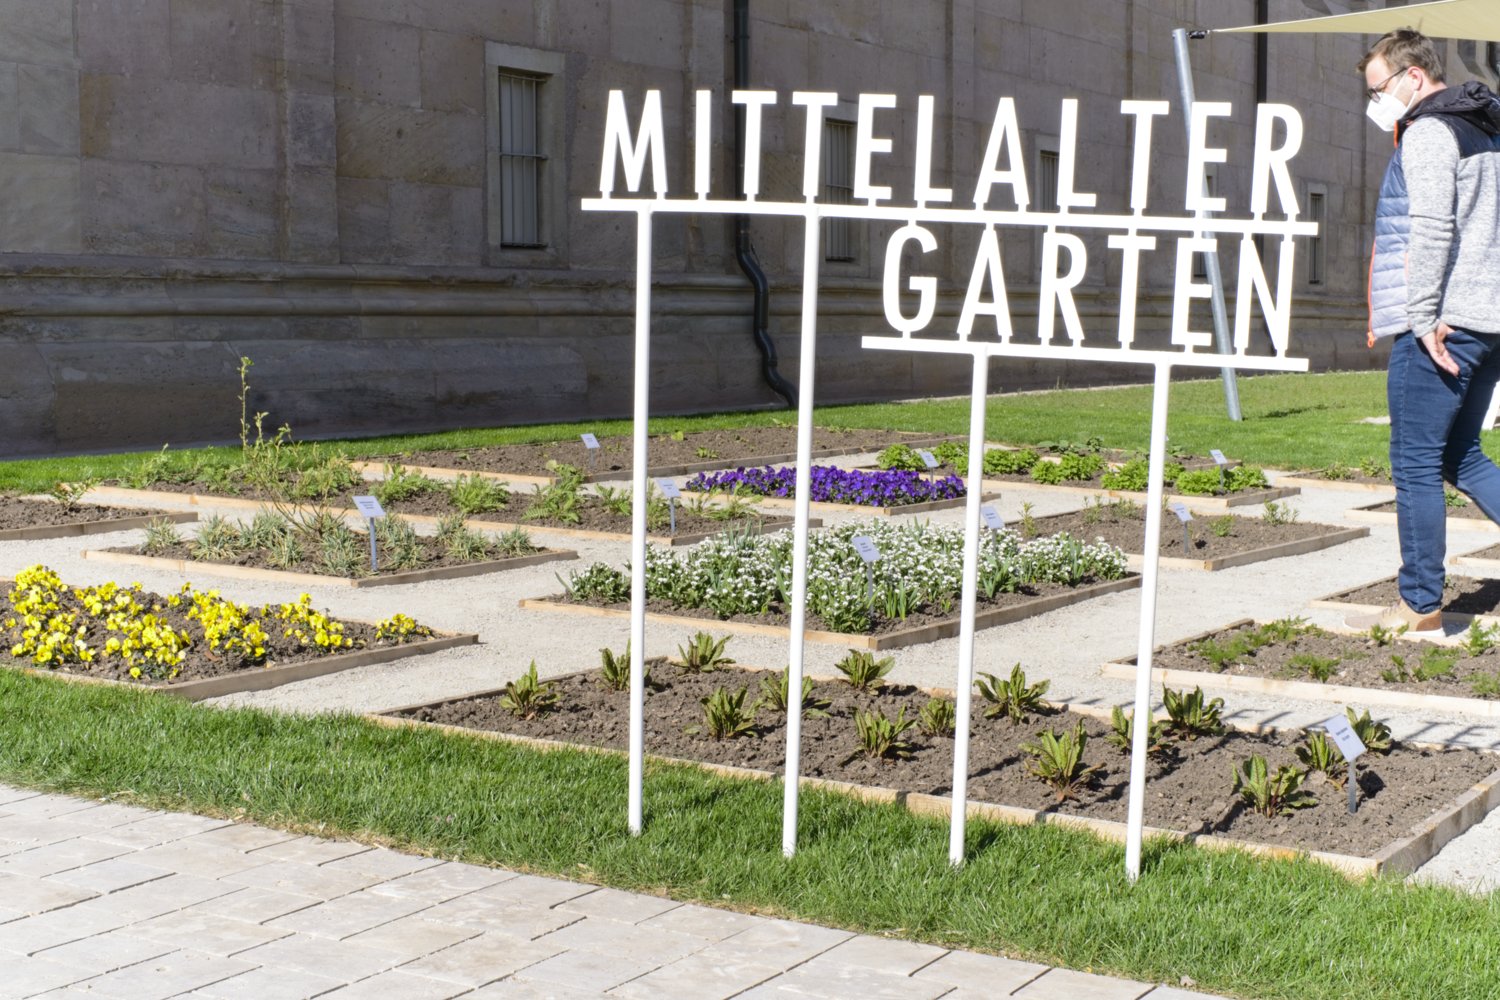 Der Mittelaltergarten besteht aus mehreren Kräuterbeeten, die im Mittelalter so von Hausbewohnern angelegt worden sind.